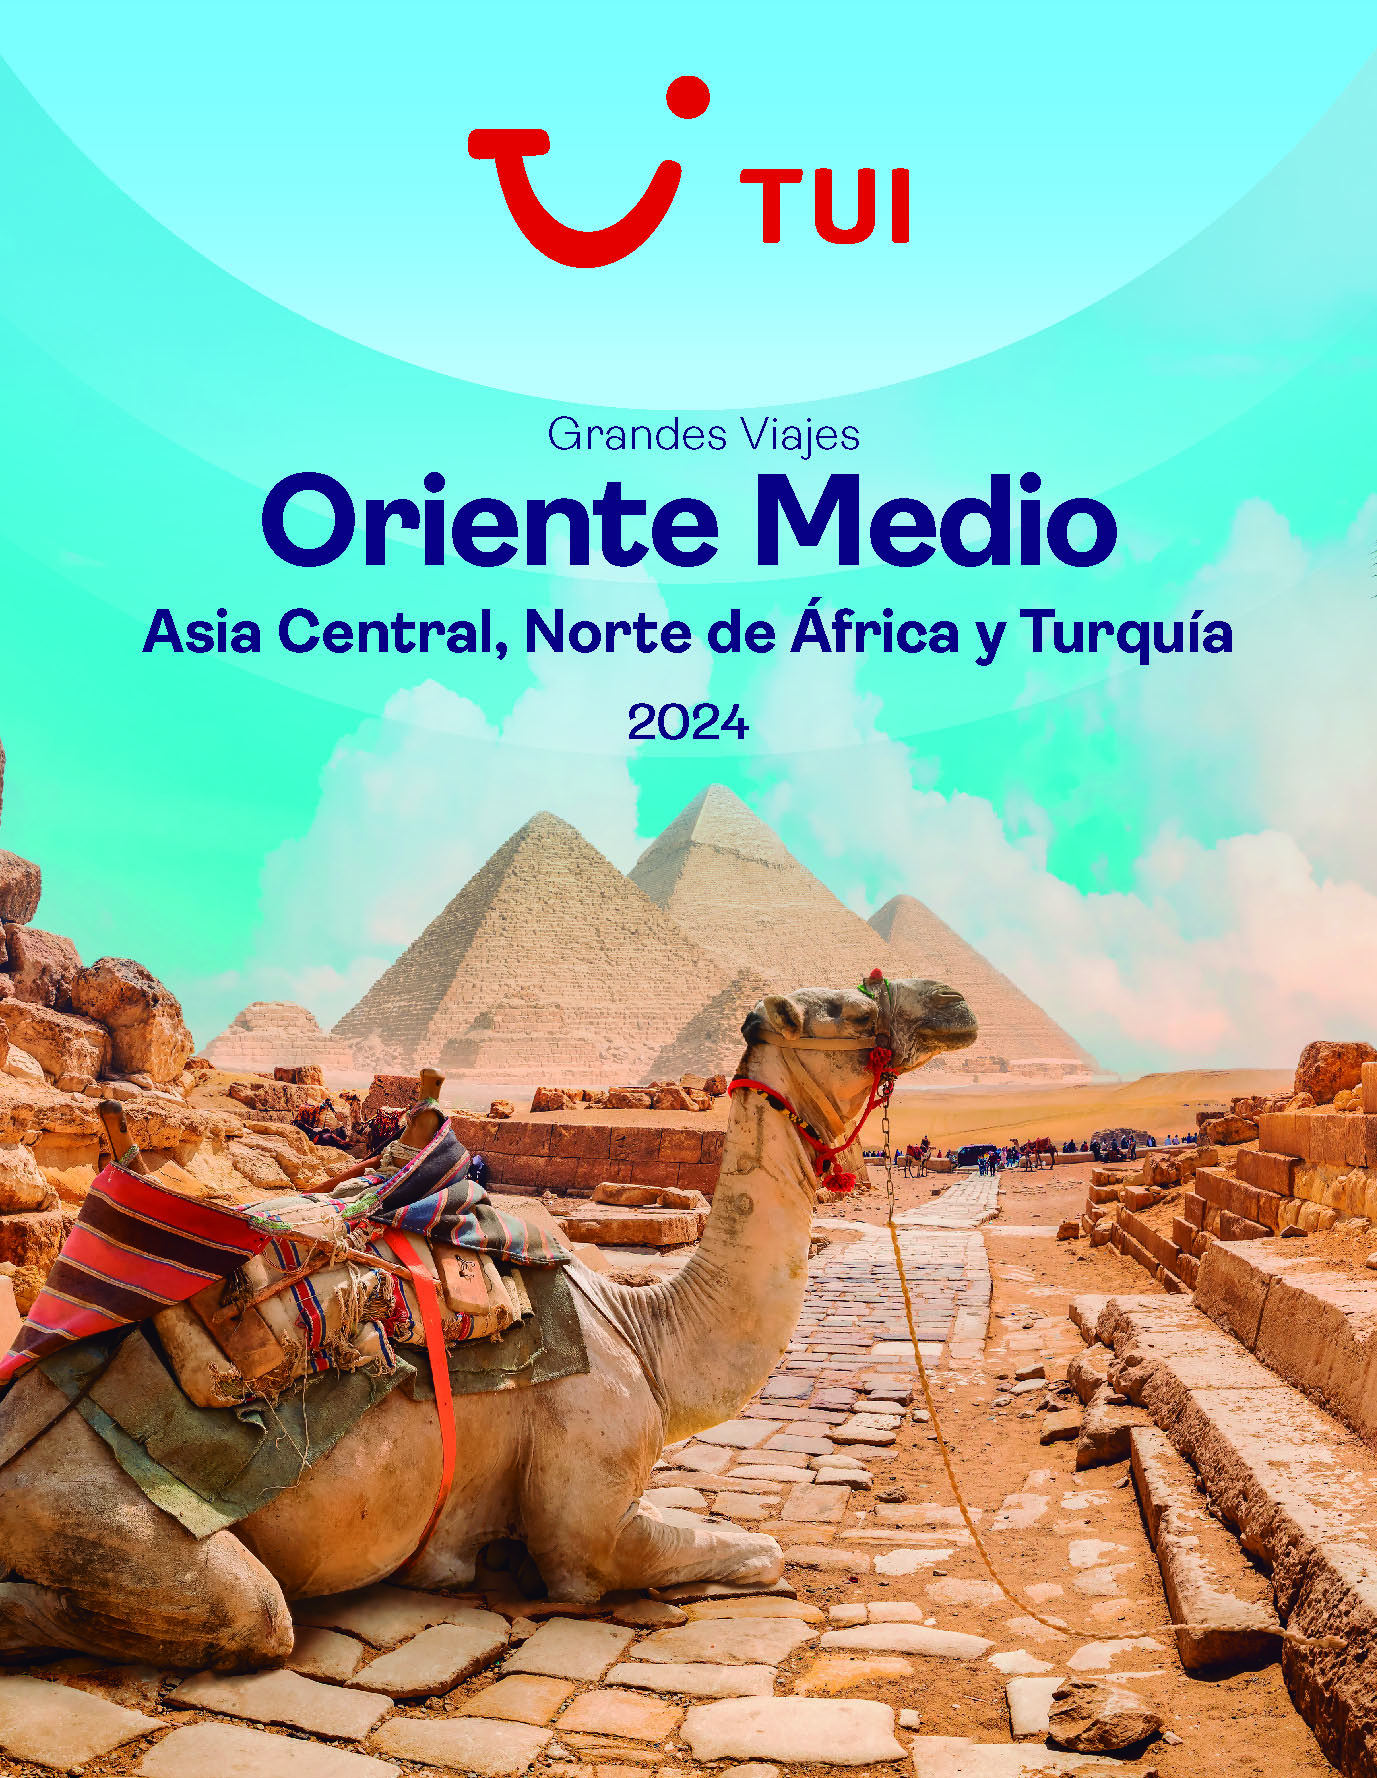 Catalogo TUI Grandes Viajes Oriente Medio Norte de Africa Turquia y Asia Central 2024